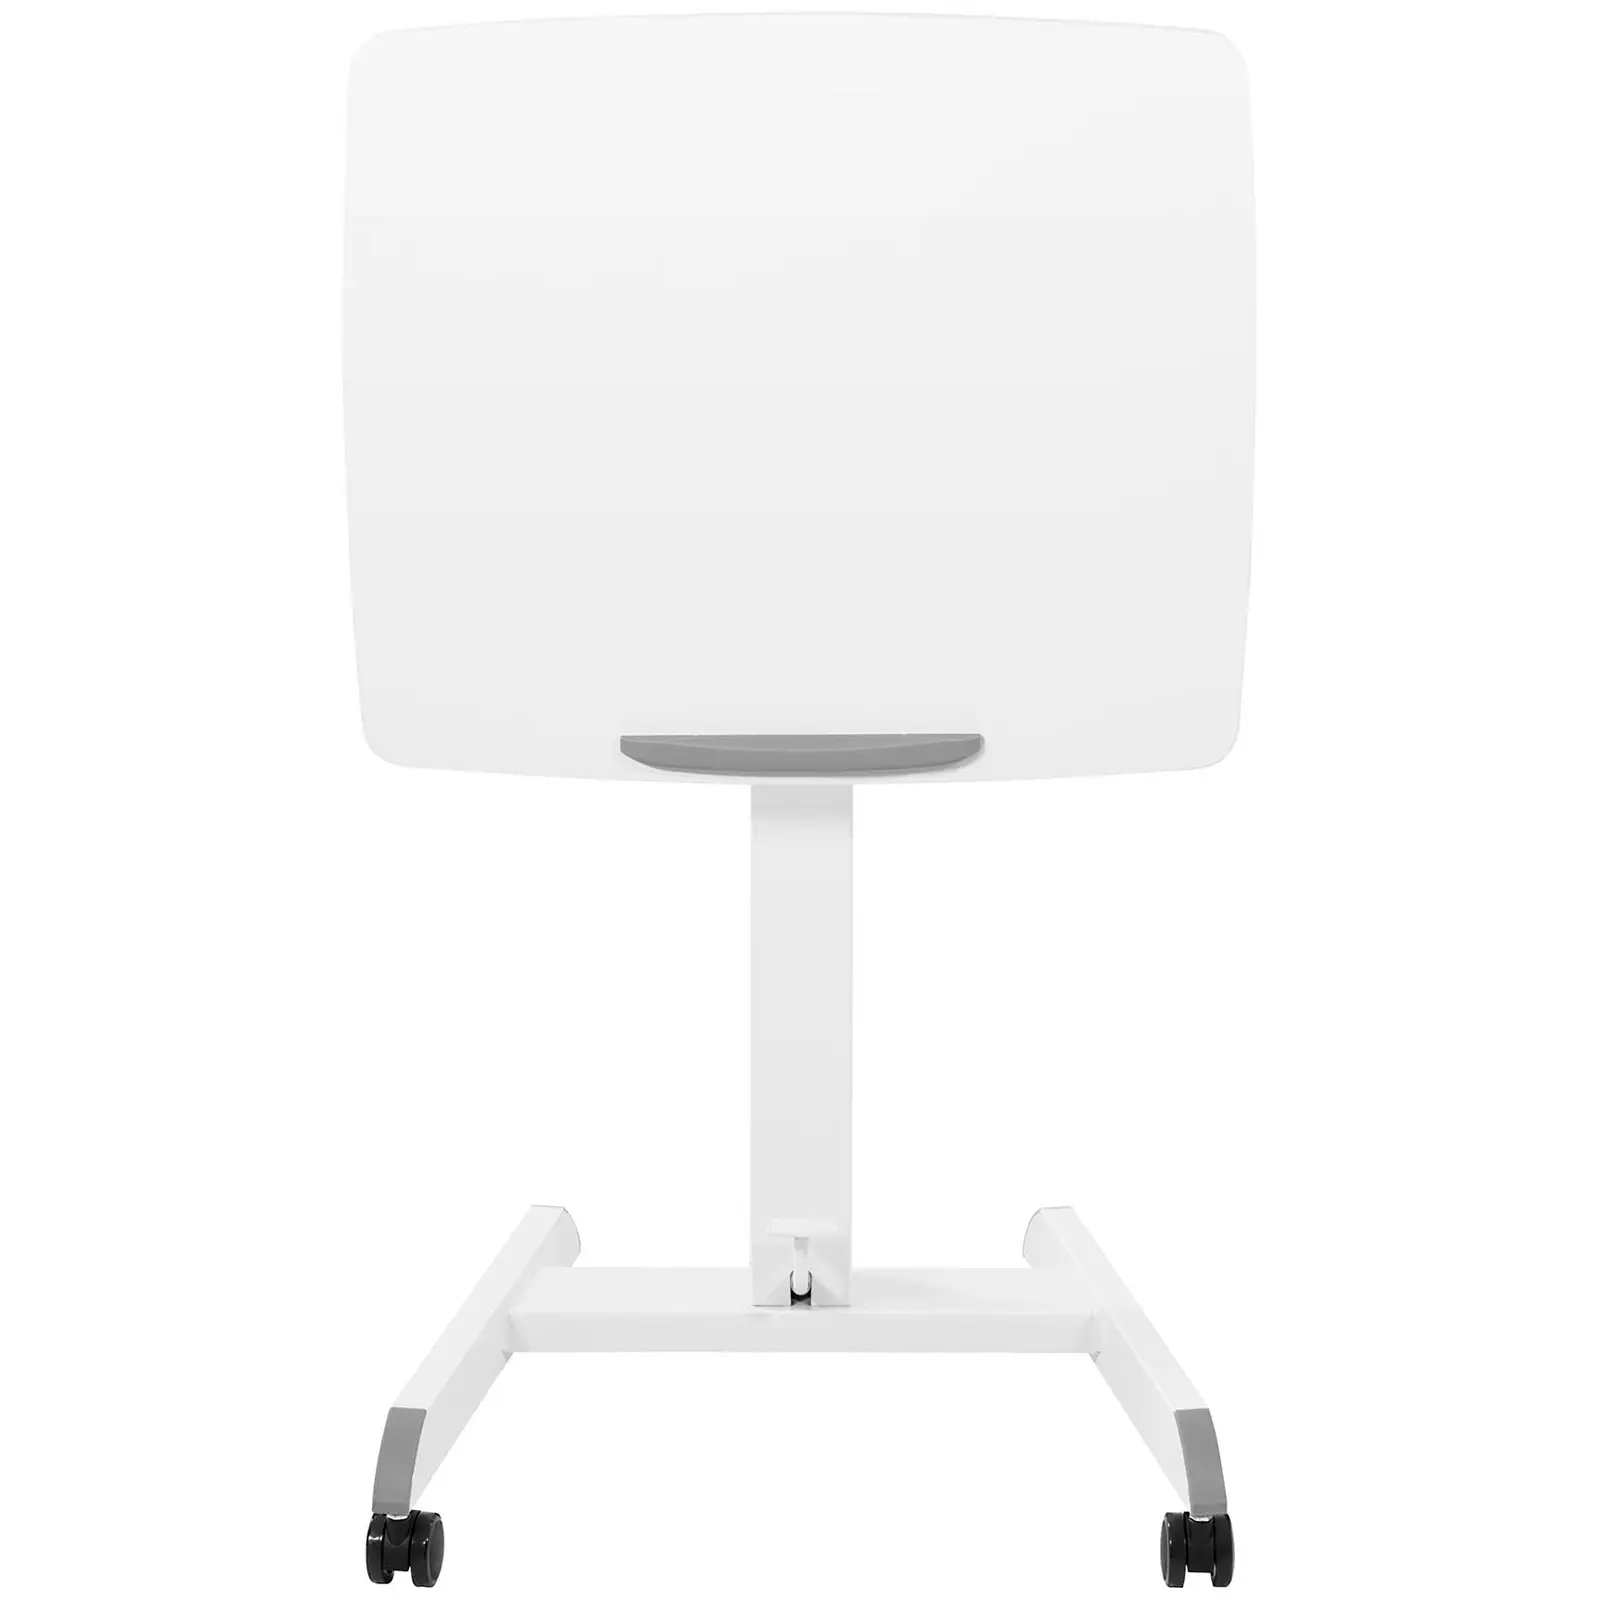 Stolik pod laptopa - 60 x 52 cm - przechylanie w zakresie 0-30° - wysokość: 825-1185 mm